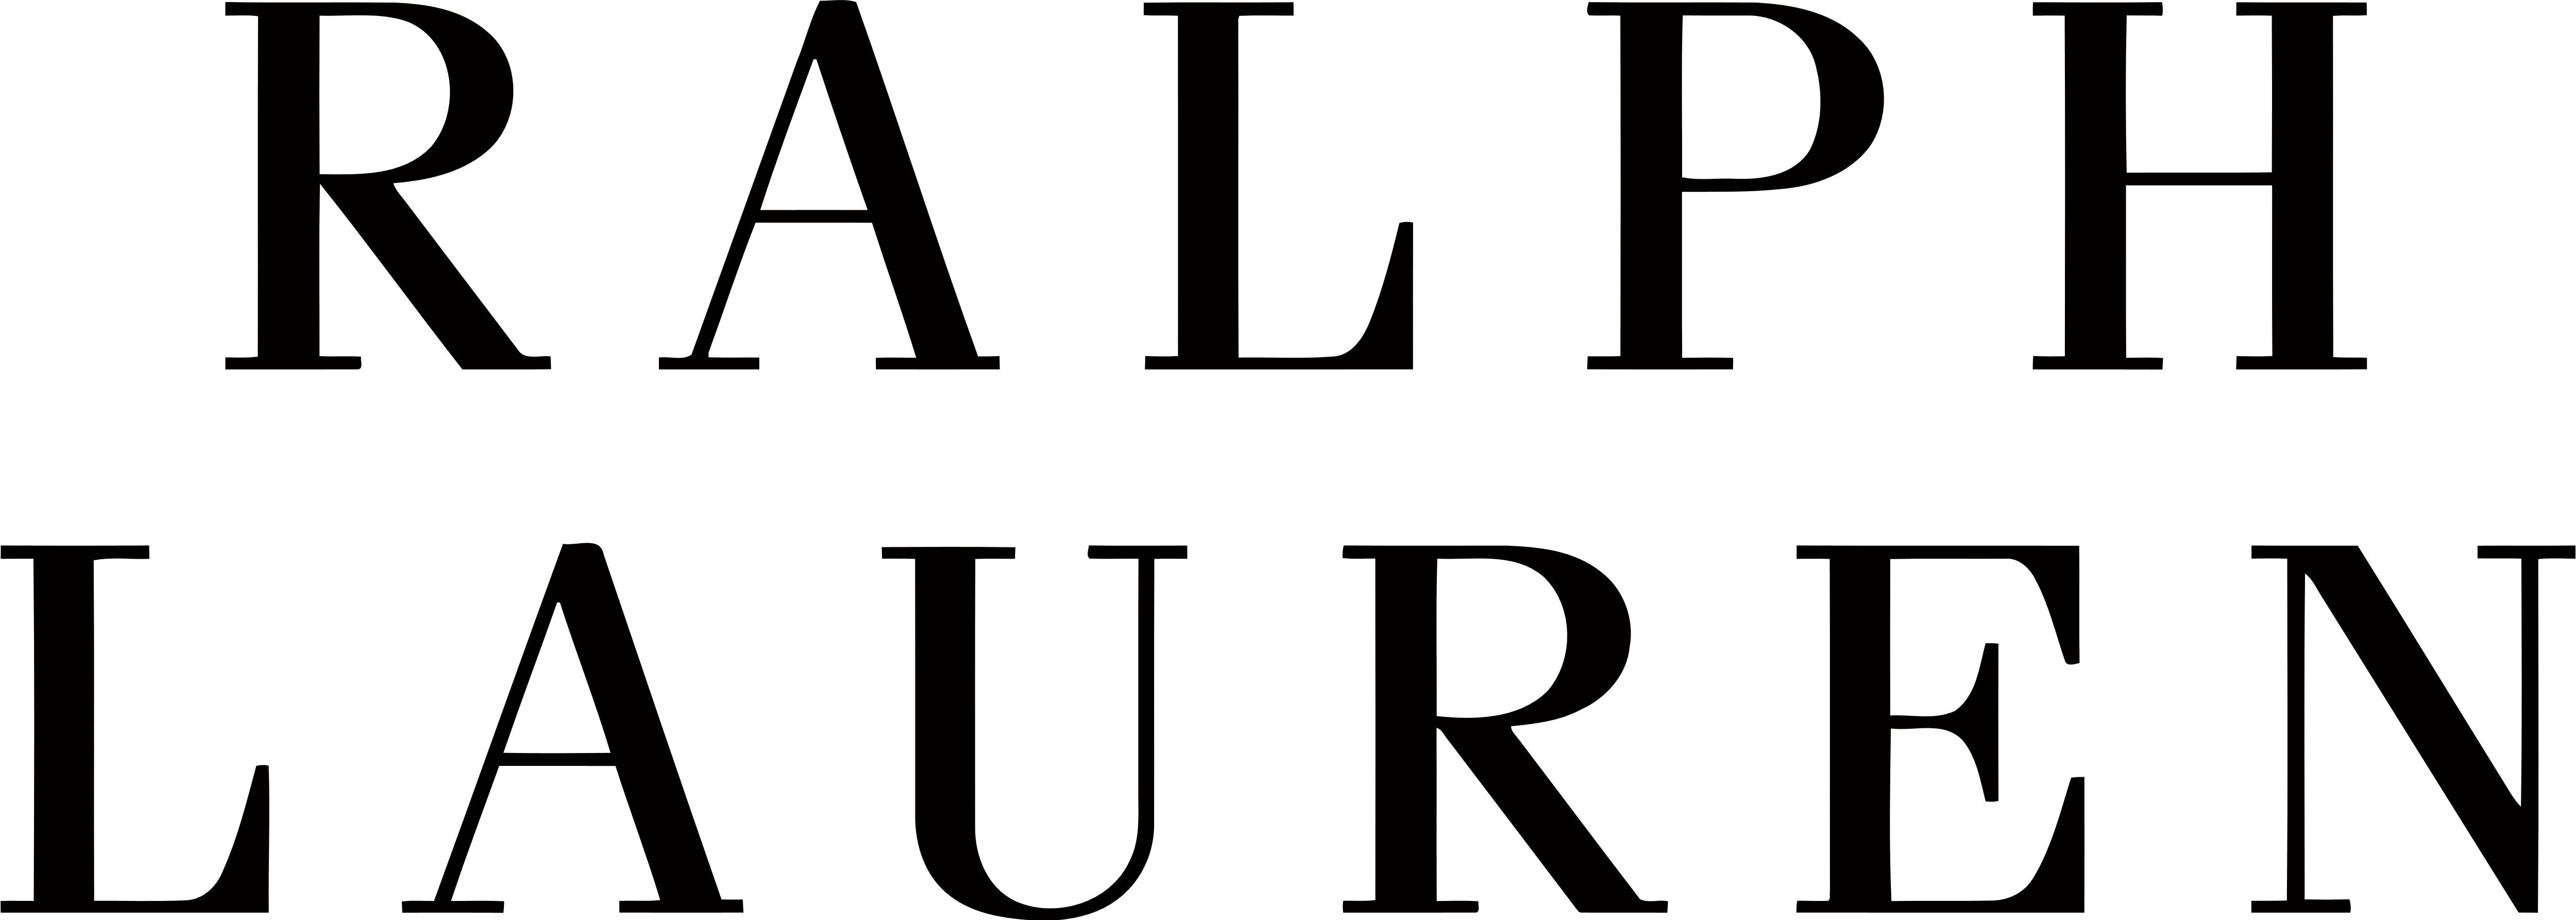 Lauren Logo - Ralph Lauren – Logos Download